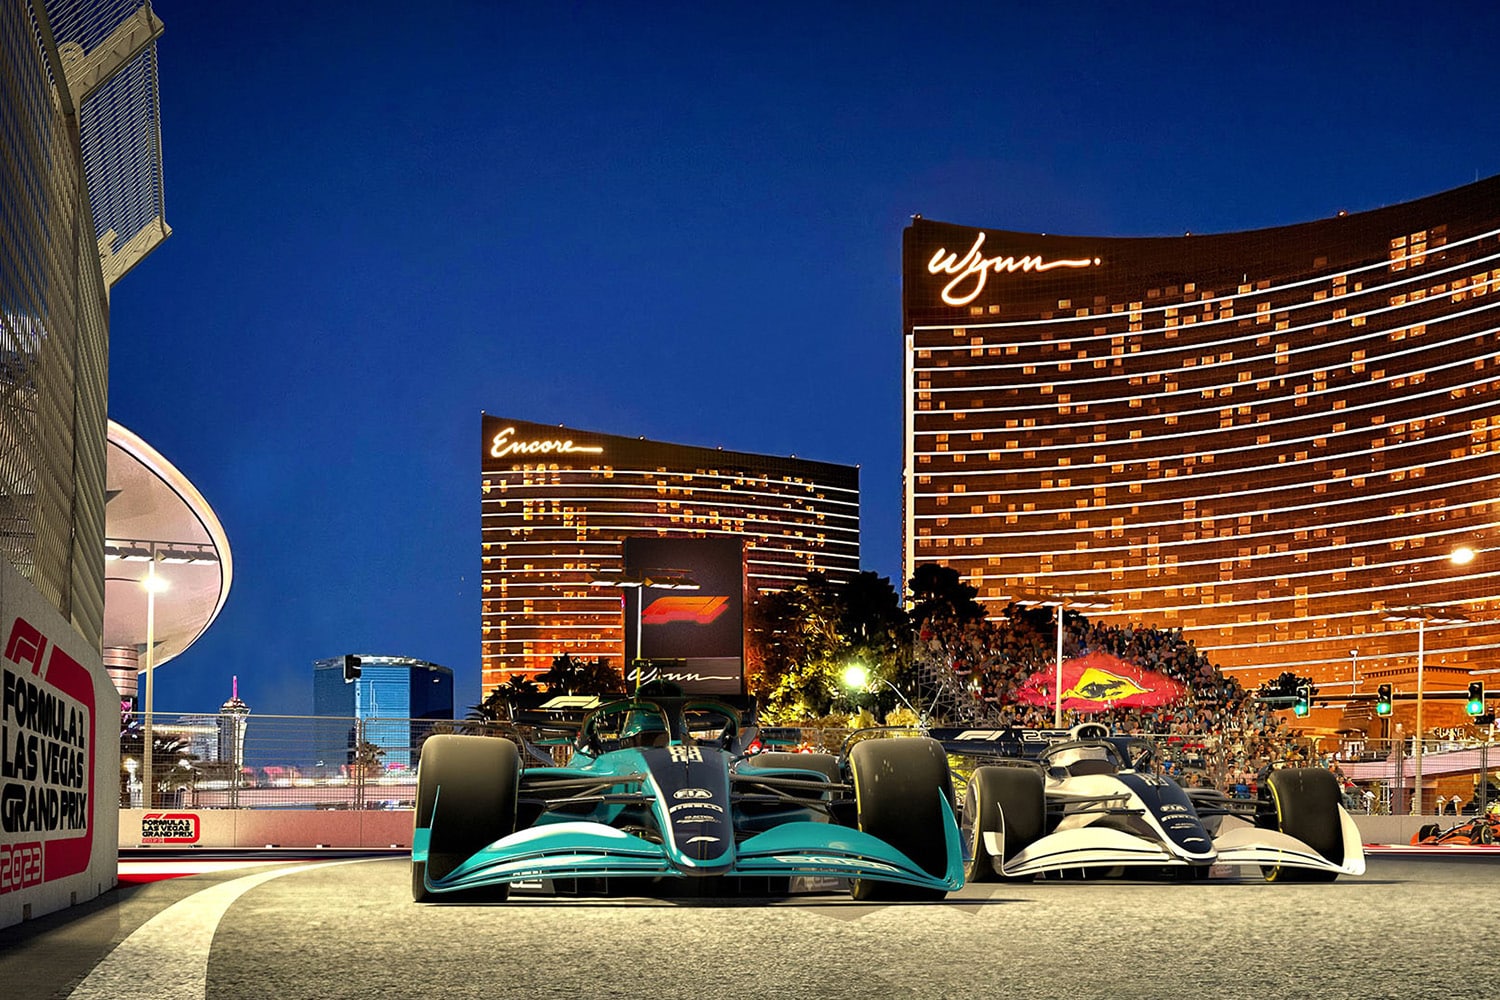 Formula 1 cars race in front of Wynn Hotel in Las Vegas